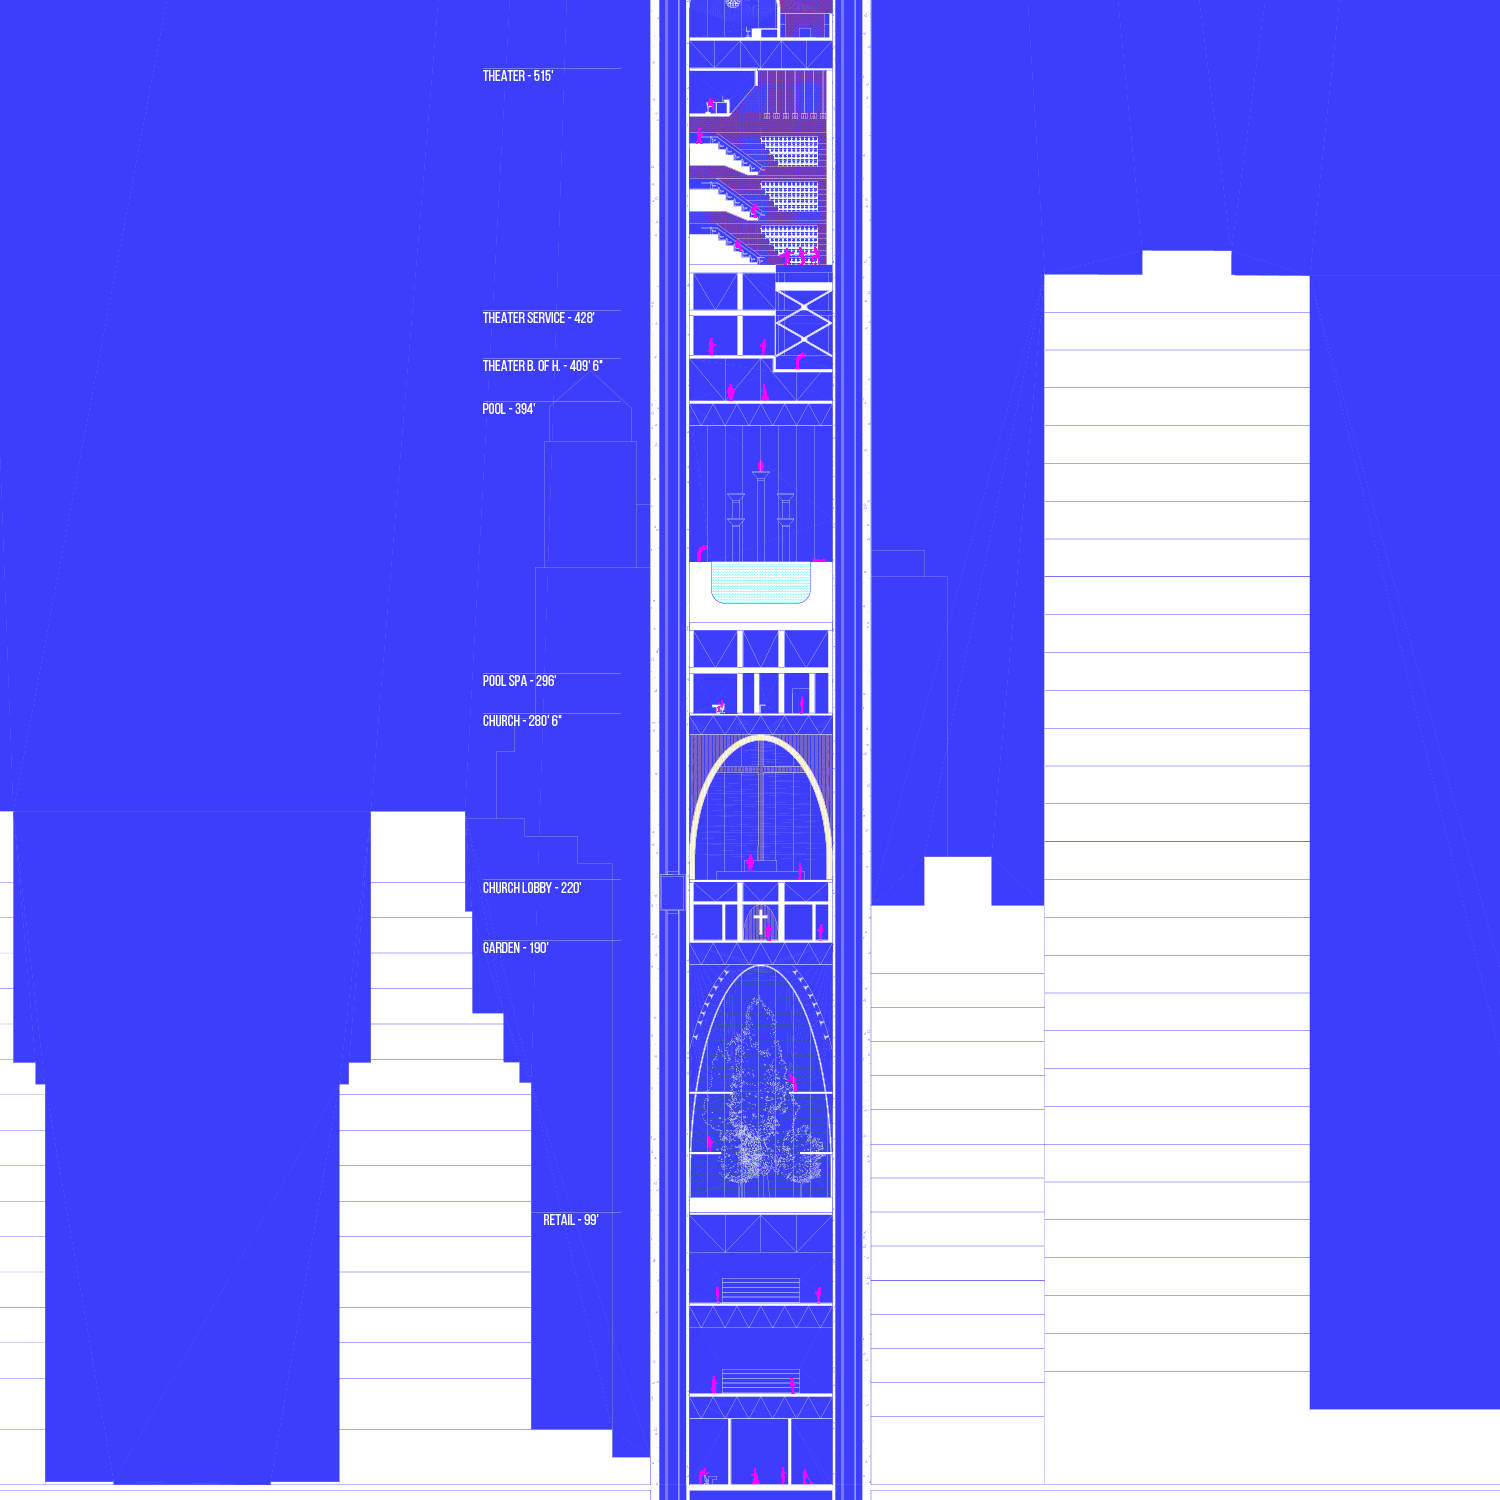 Size chart for a skyscraper.